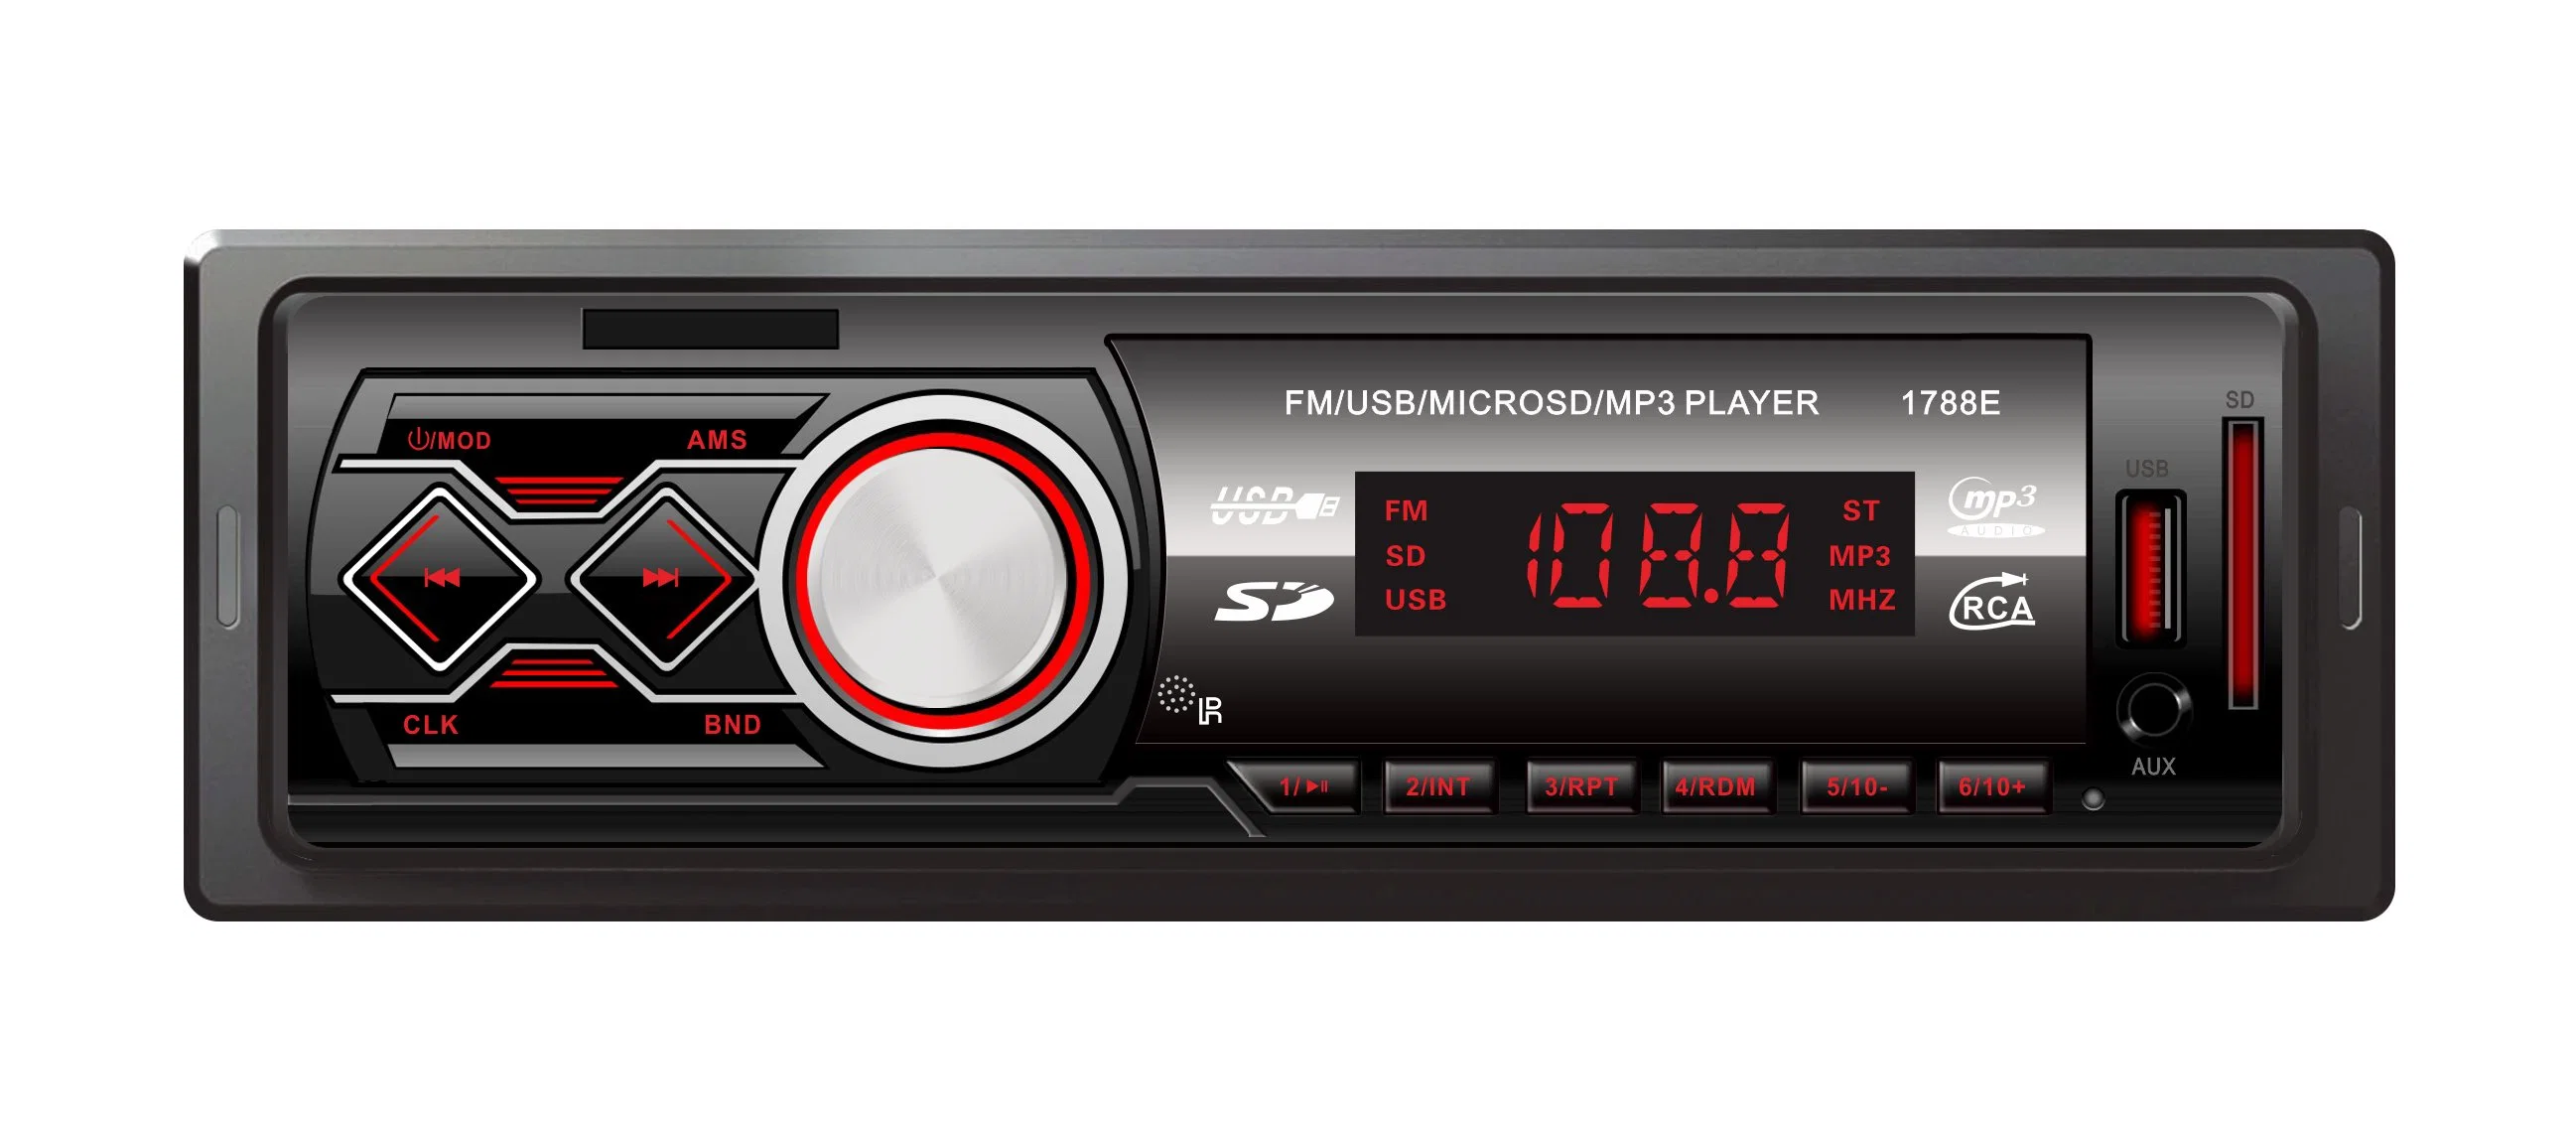 Бытовая электроника цифровой приемник мультимедиа Car Audio Player